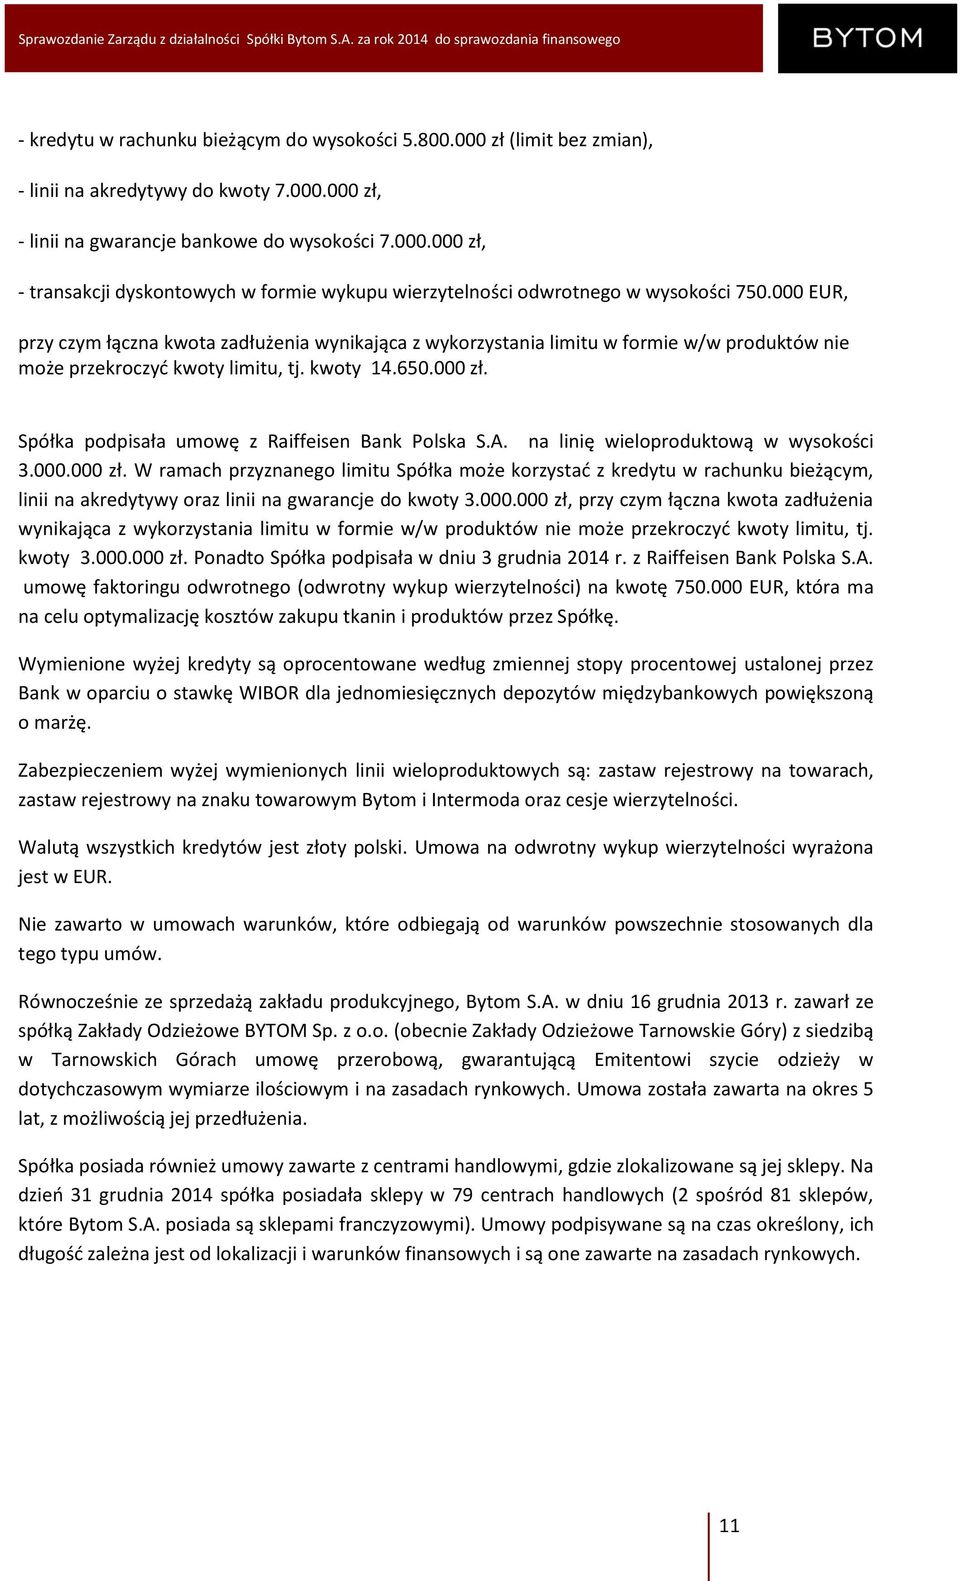 Spółka podpisała umowę z Raiffeisen Bank Polska S.A. na linię wieloproduktową w wysokości 3.000.000 zł.